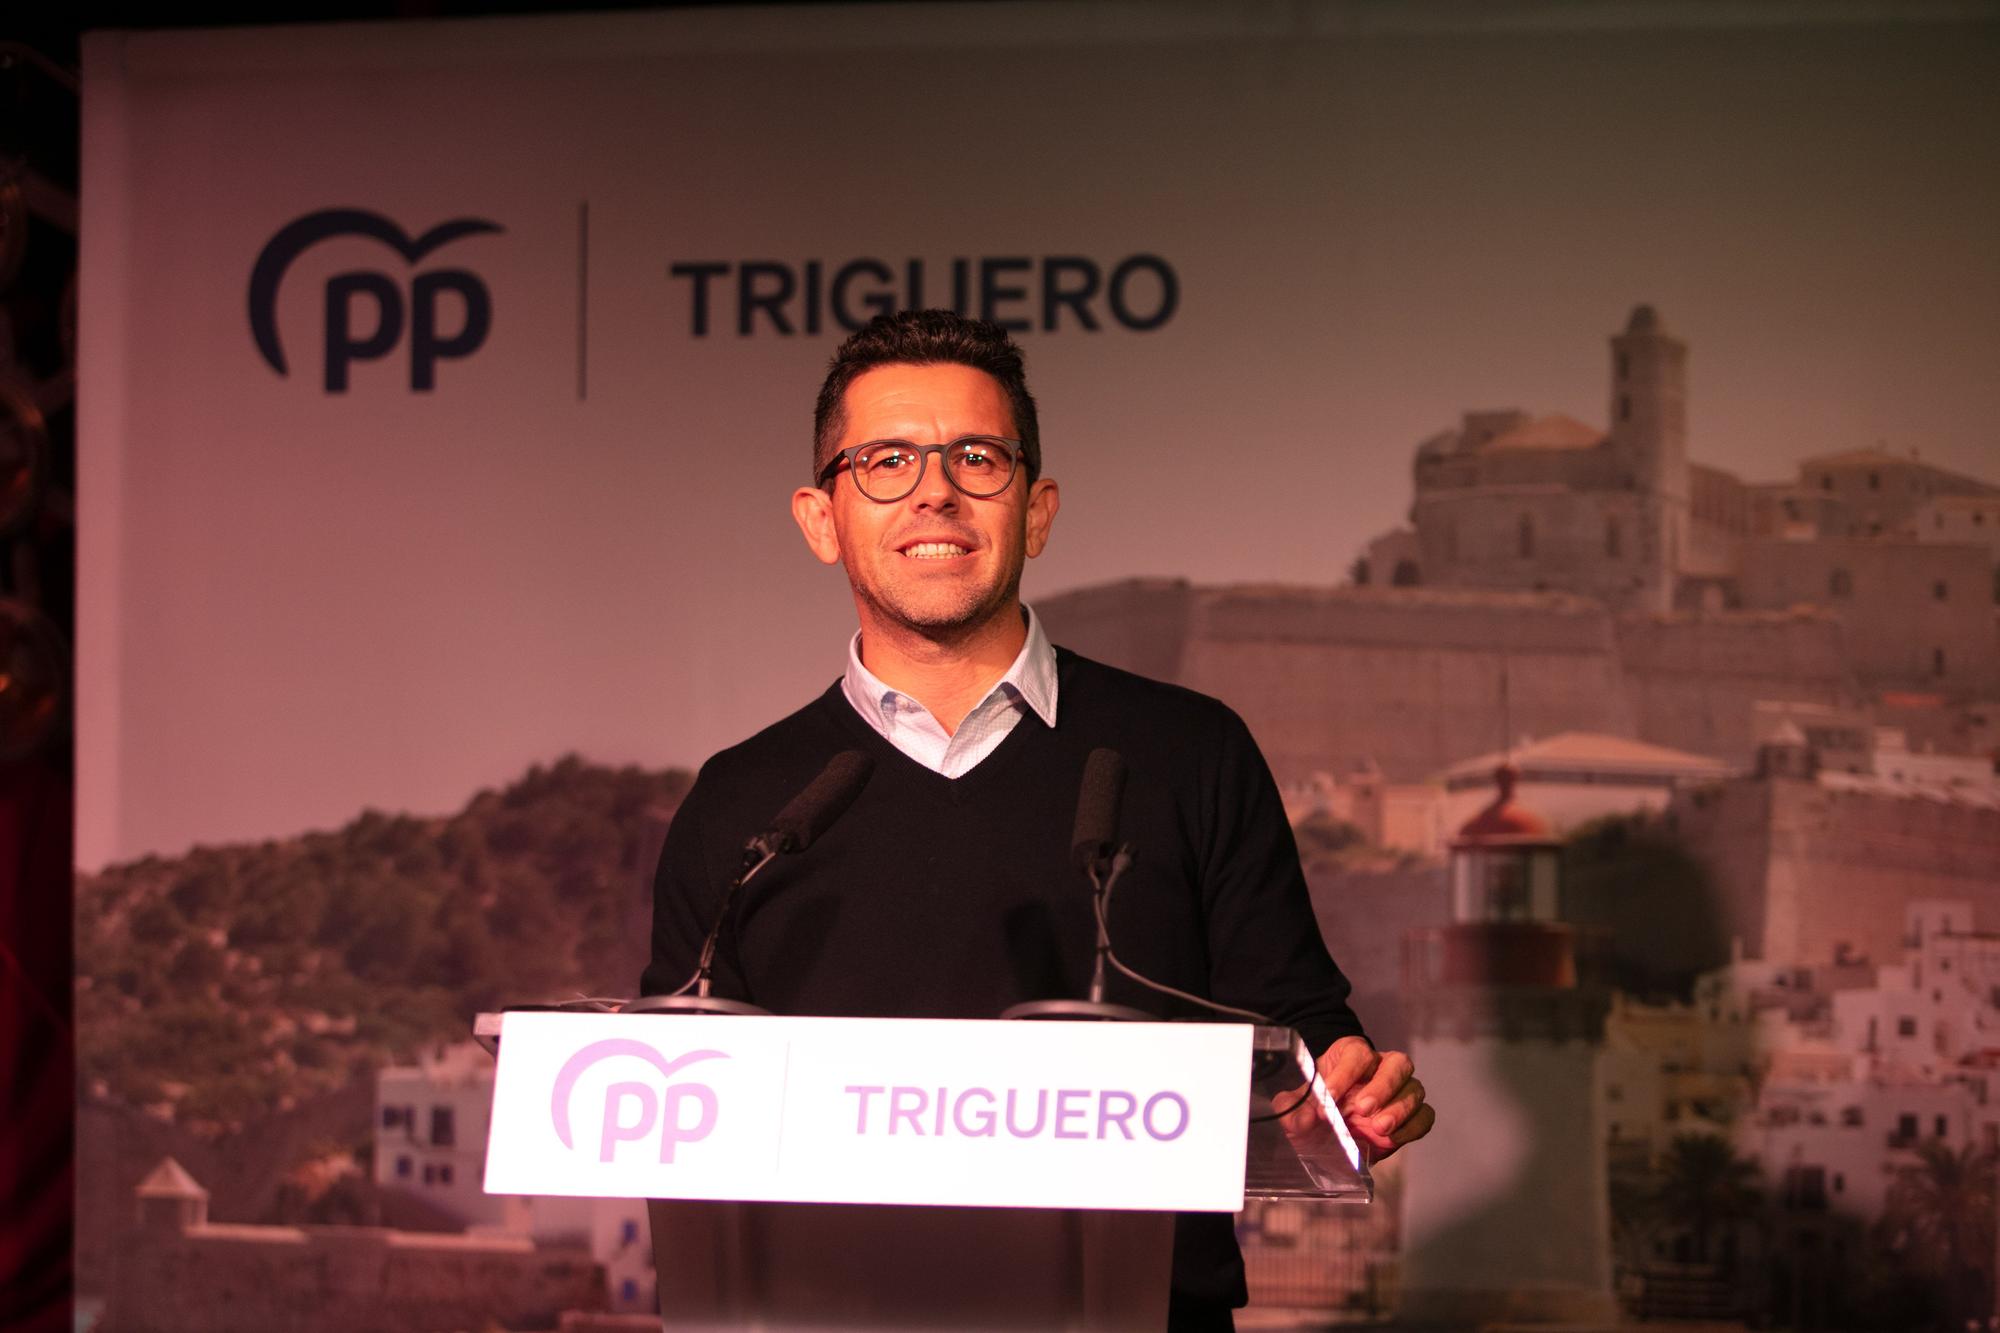 Elecciones en Ibiza: Rafa Triguero se lanza contra Ruiz sin mencionarlo